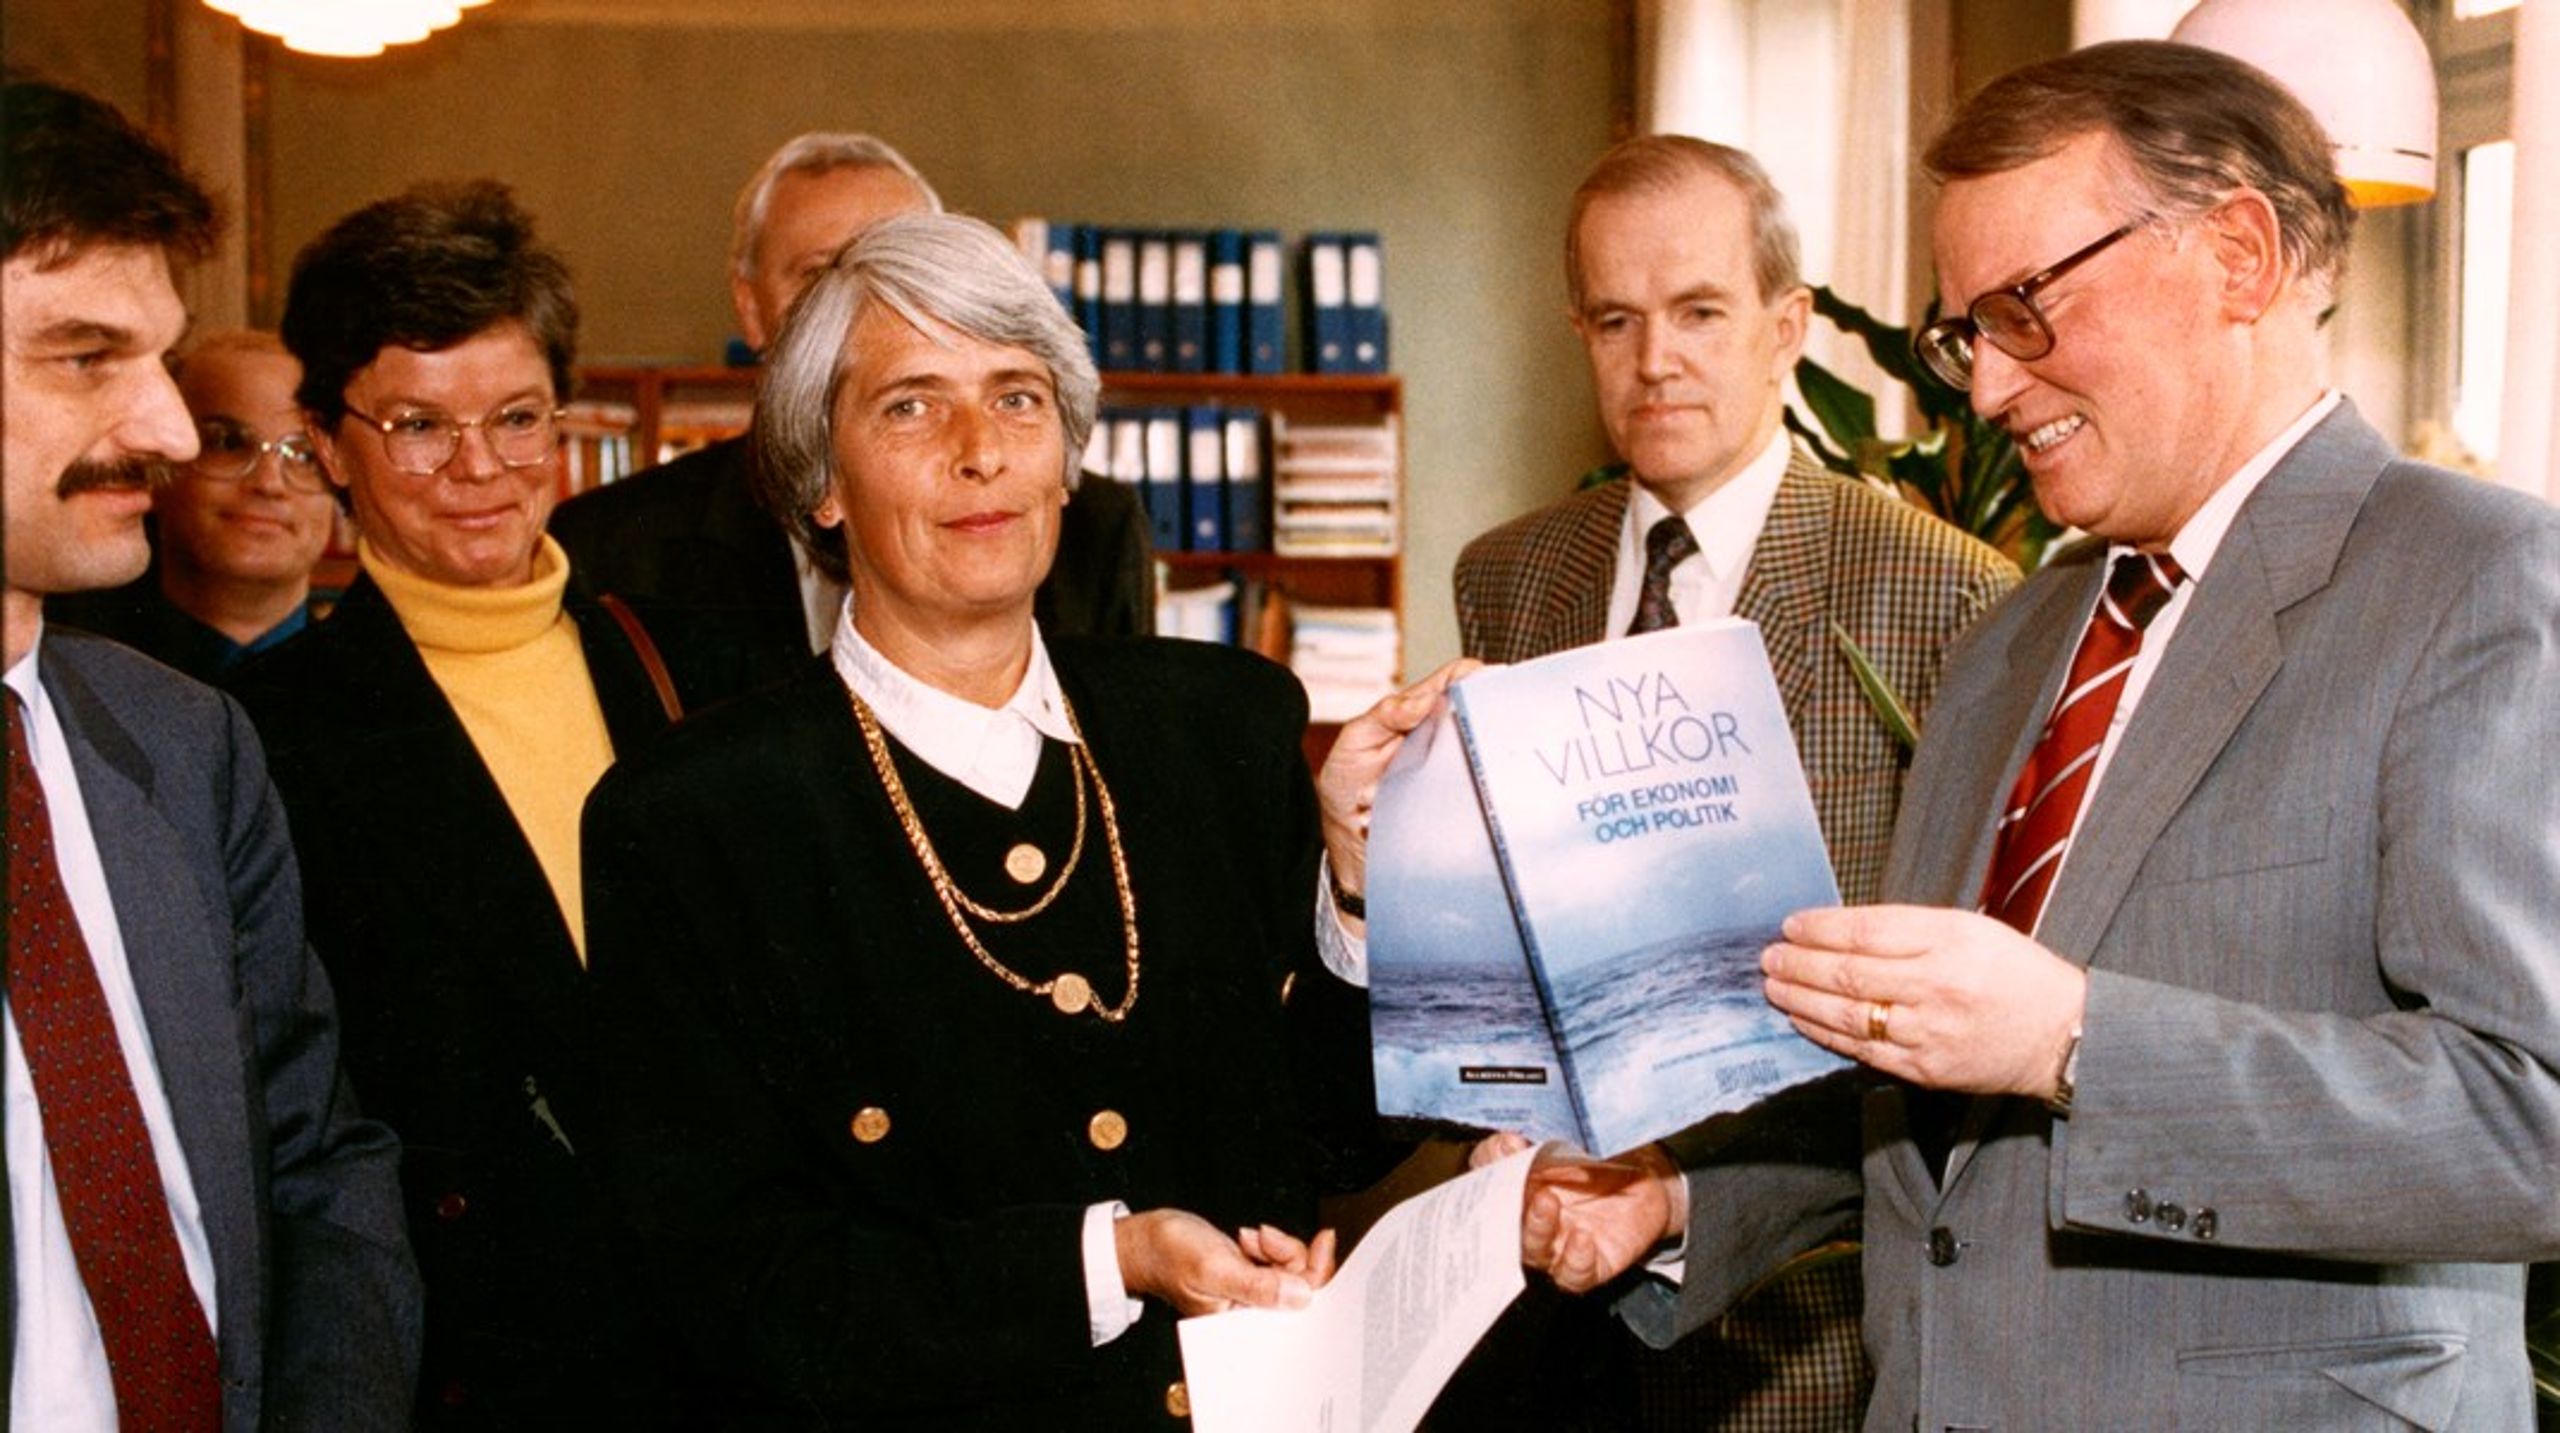 Assar Lindbeck lämnar över utredningen till finansminister Anne Wibble. I vänster bildkant syns Torsten Persson och bakom&nbsp;honom Olof Petersson. Birgitta Swedenborg står till vänster om Wibble.